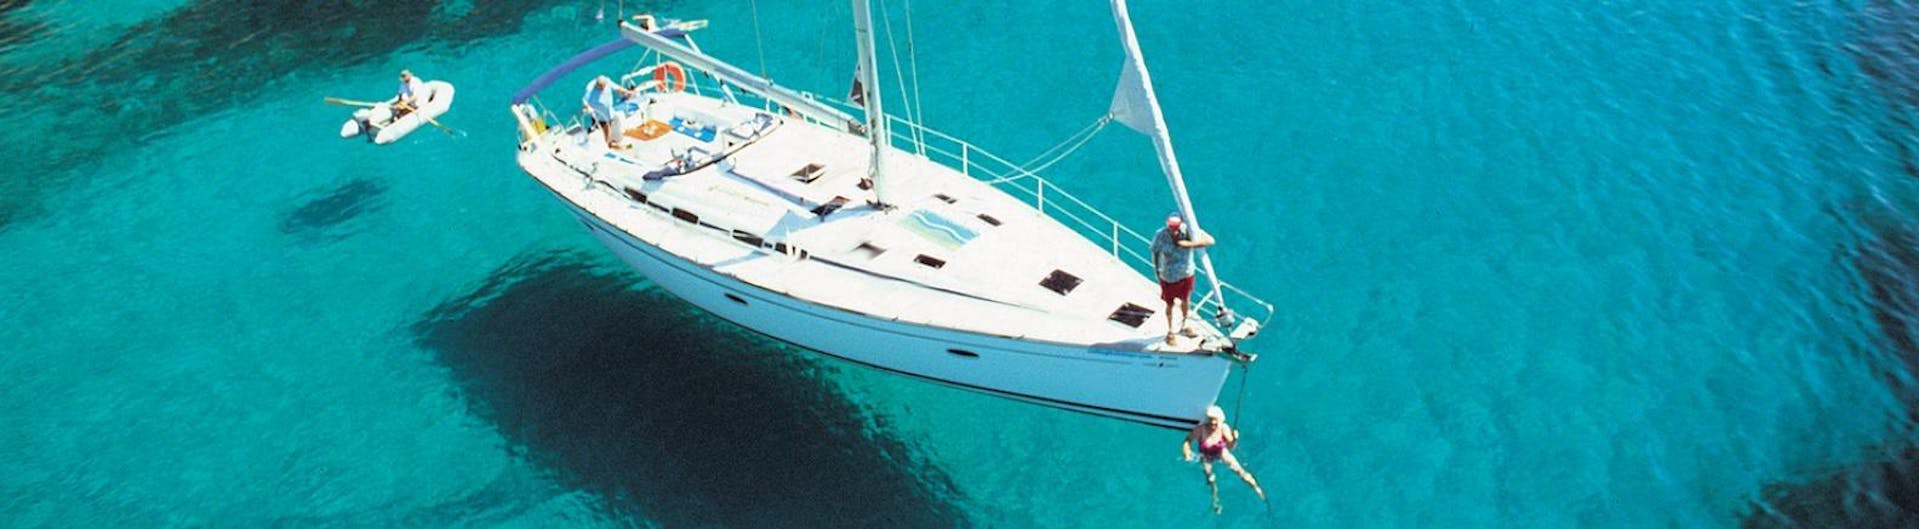 Un elegante velero sobre las aguas turquesas del Mar Egeo durante un viaje en velero a Delos y Rinia con Set Sail Mykonos.